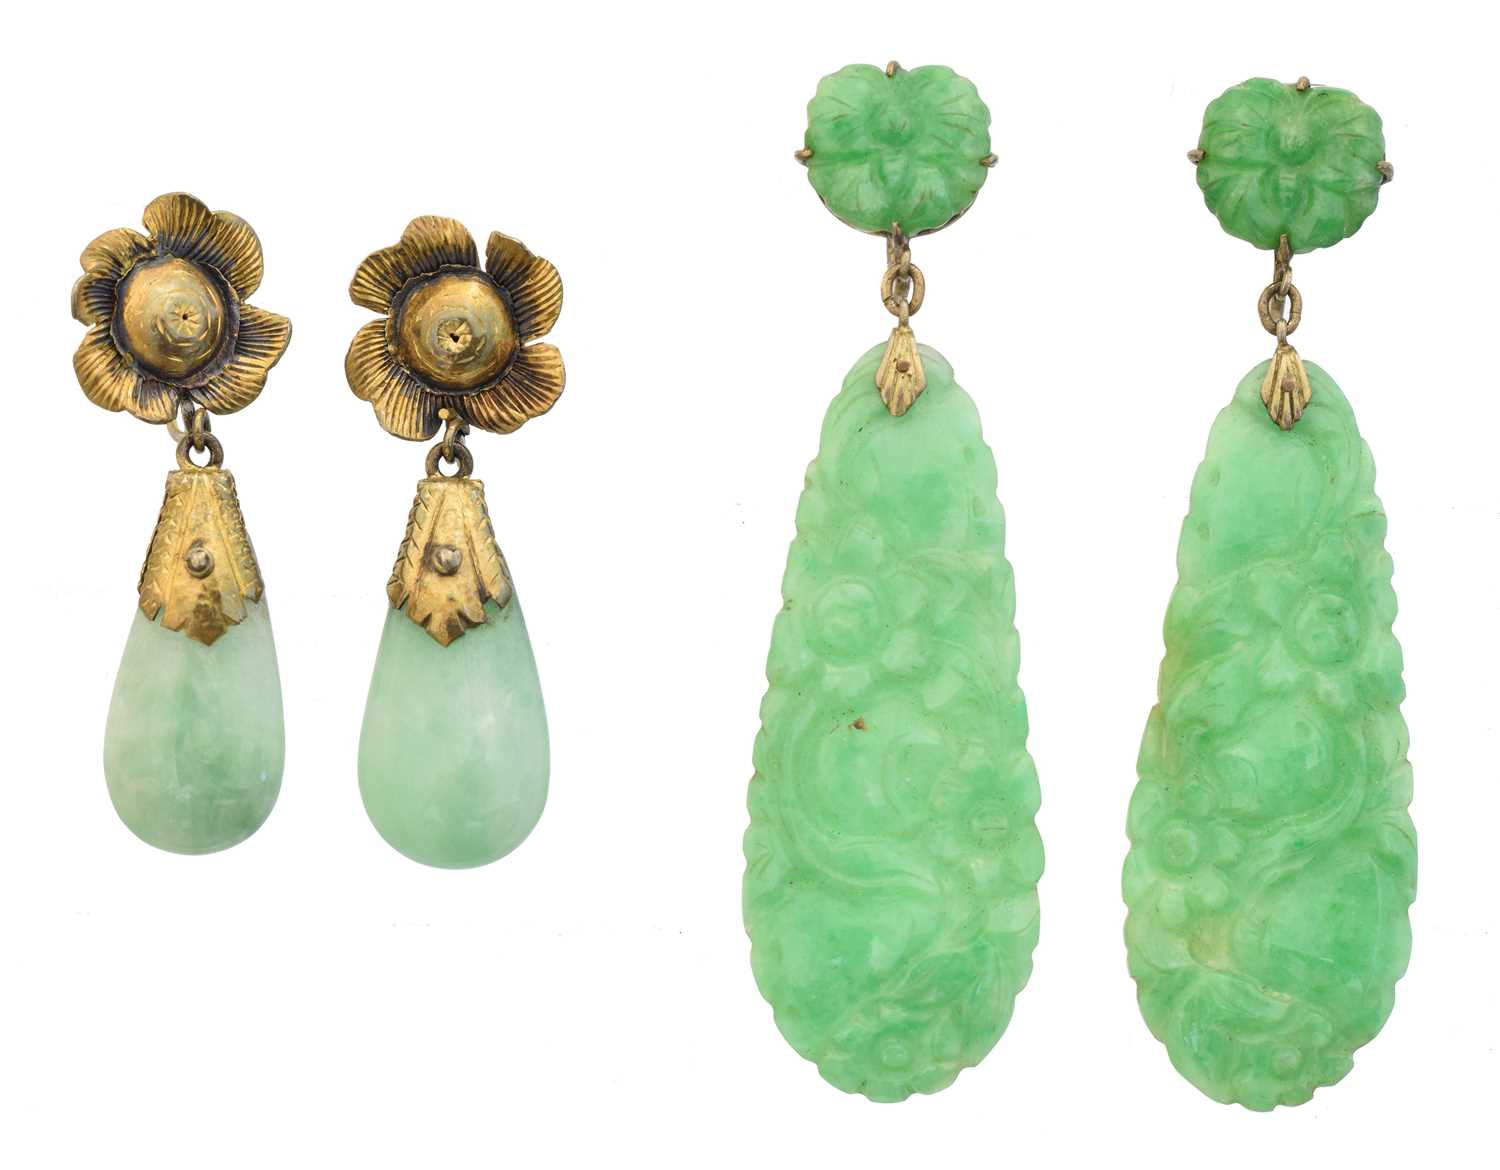 Lot Two pairs of jade earrings